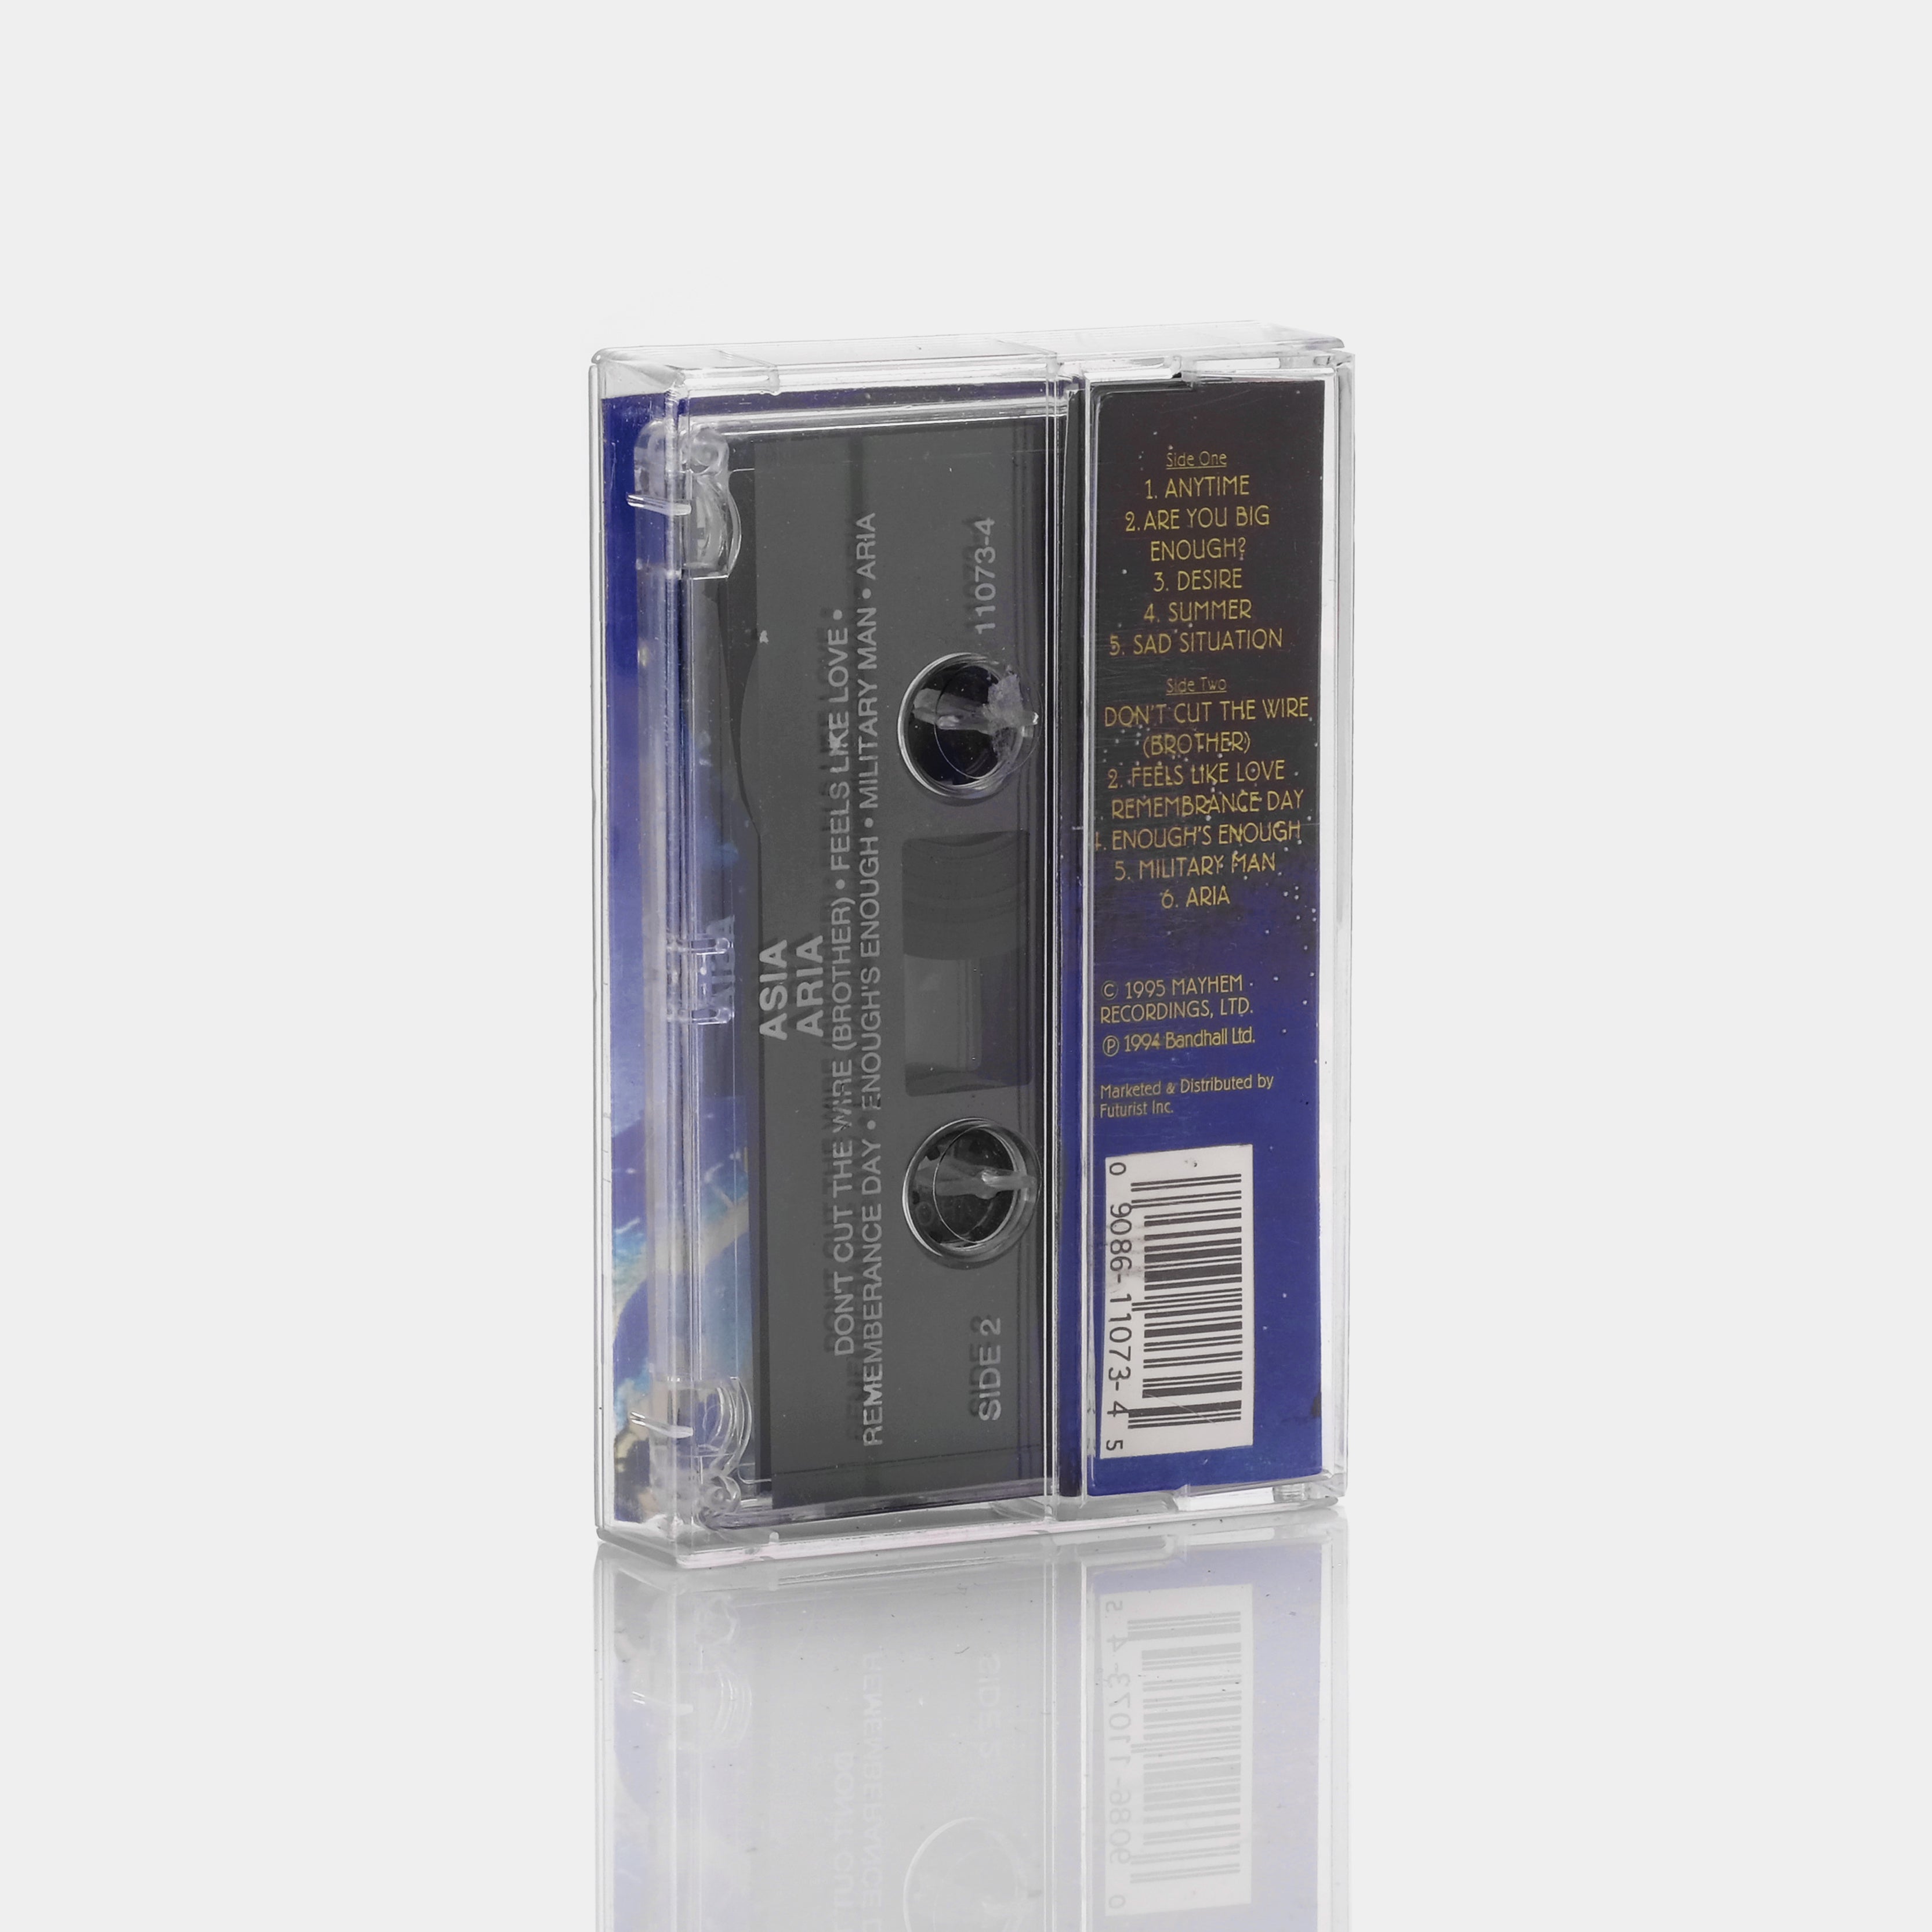 Asia - Aria Cassette Tape